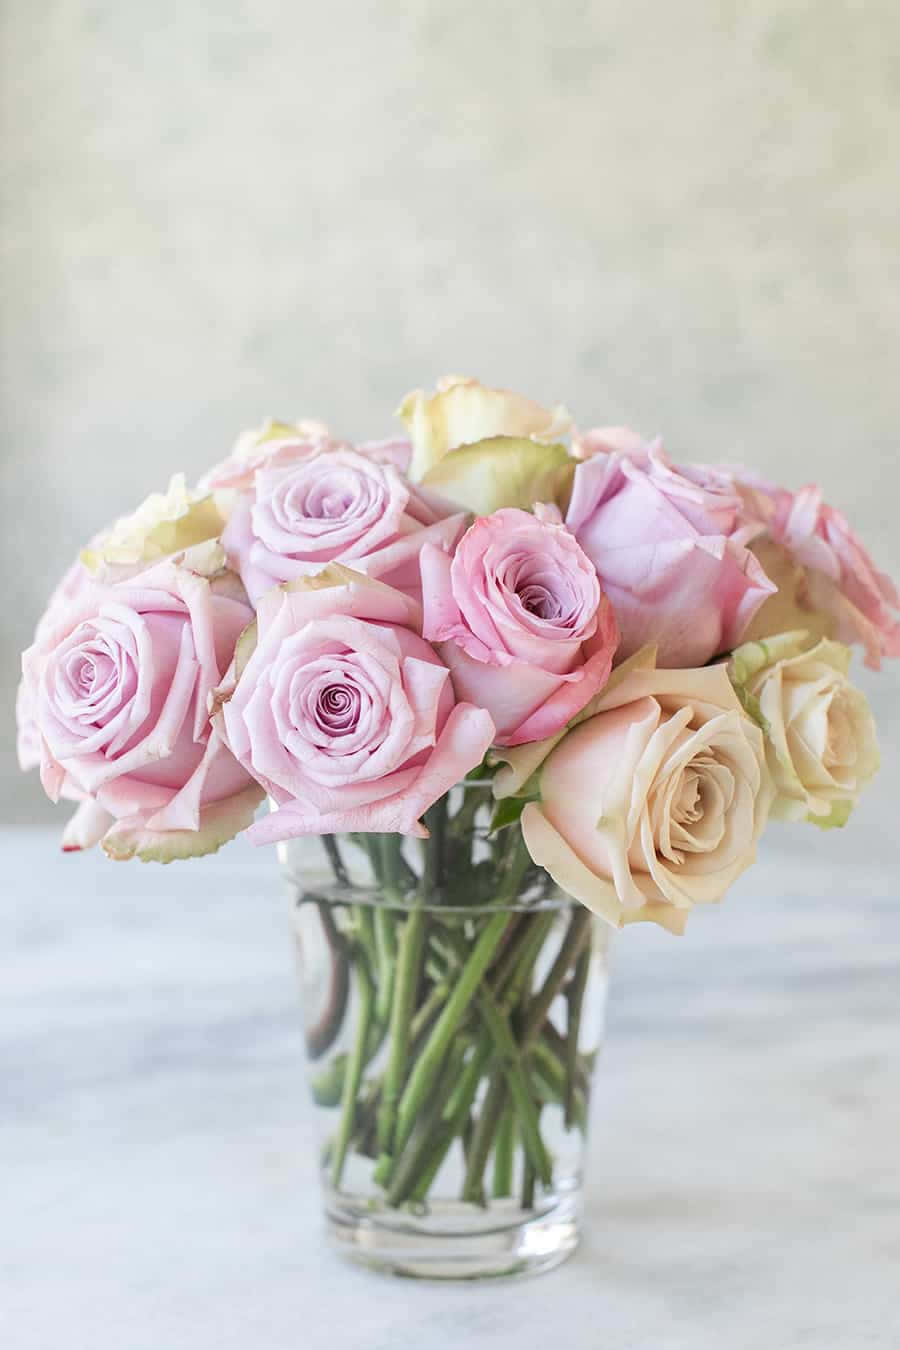 Bellissimaimmagine Fotografica Di Un Bouquet Di Rose Rosa E Gialle